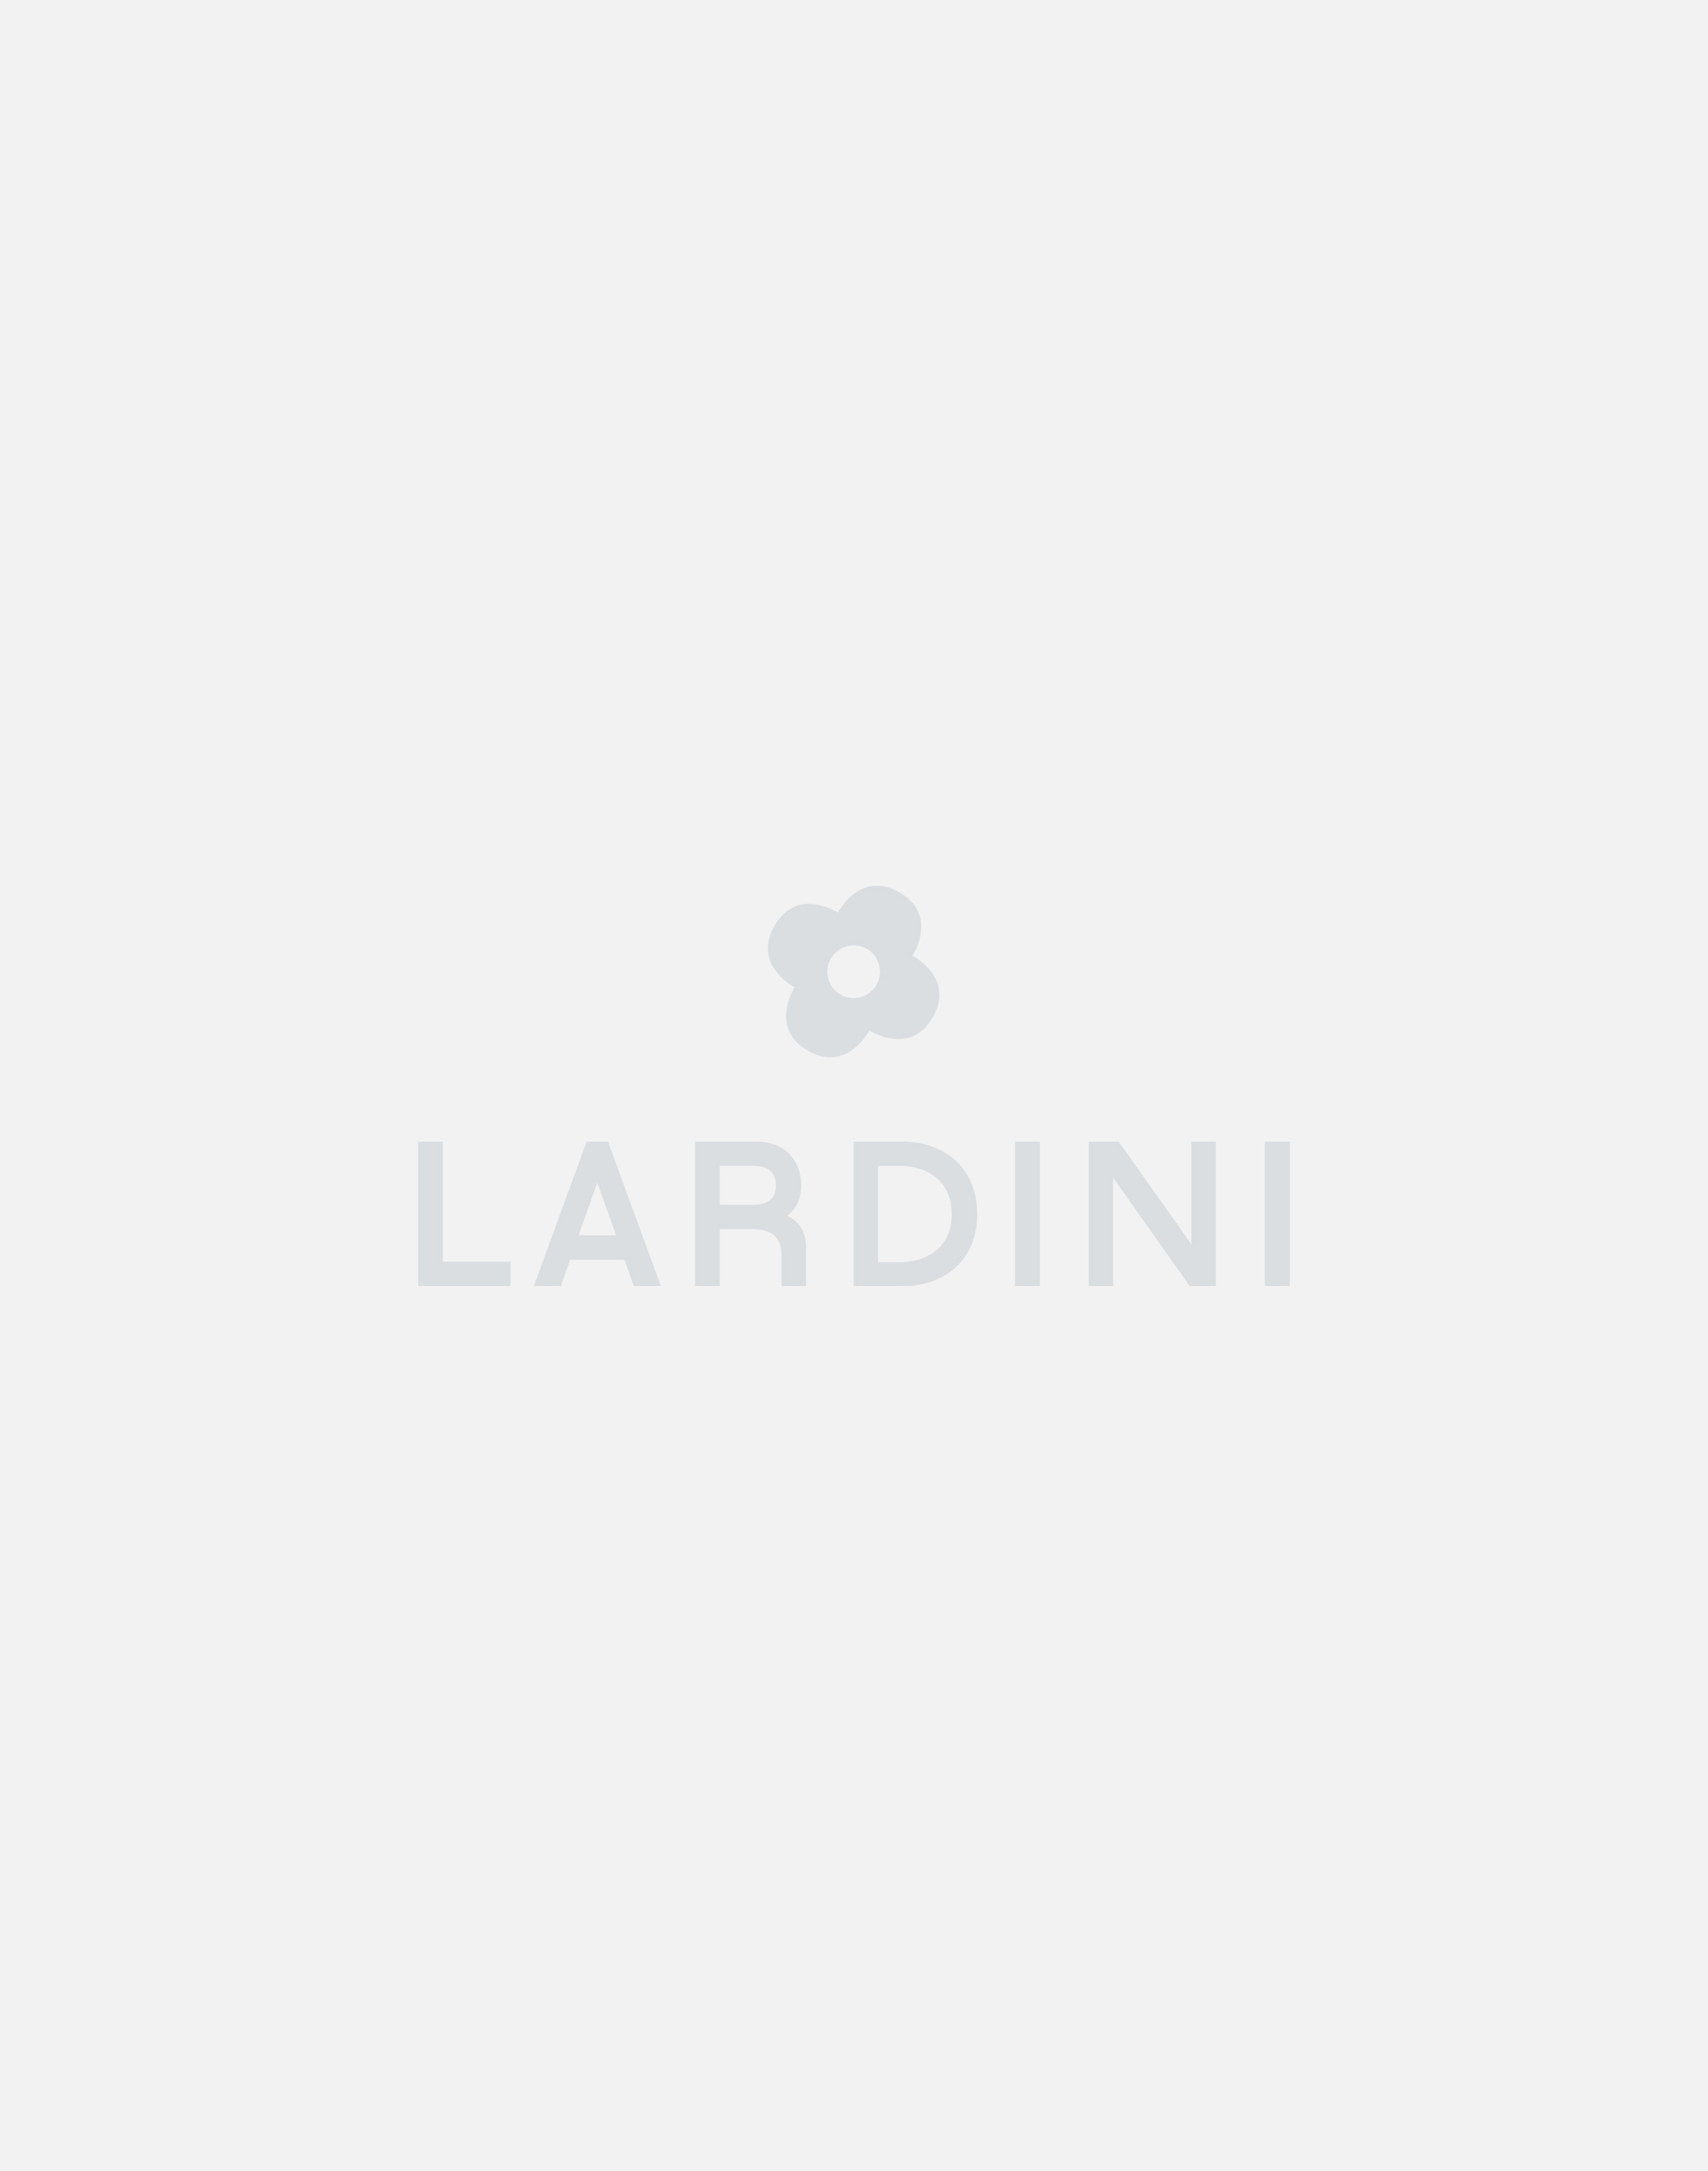 Leather slip-on sneaker - Lardini by Yosuke Aizawa 2